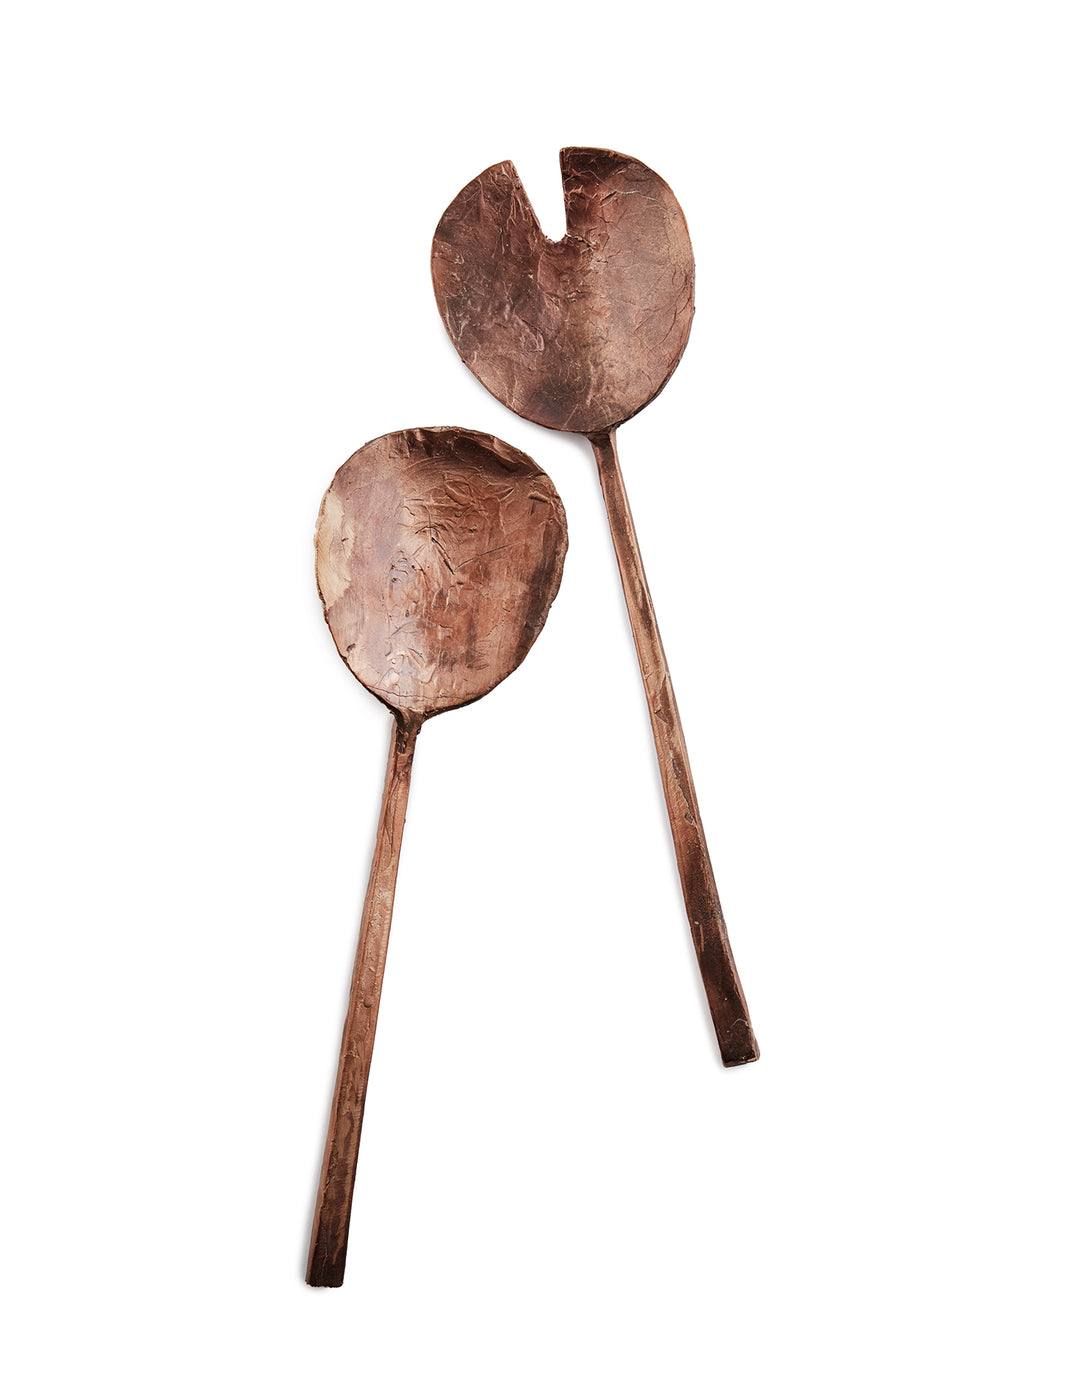 Handcast artisan bronze serving utensils on white background